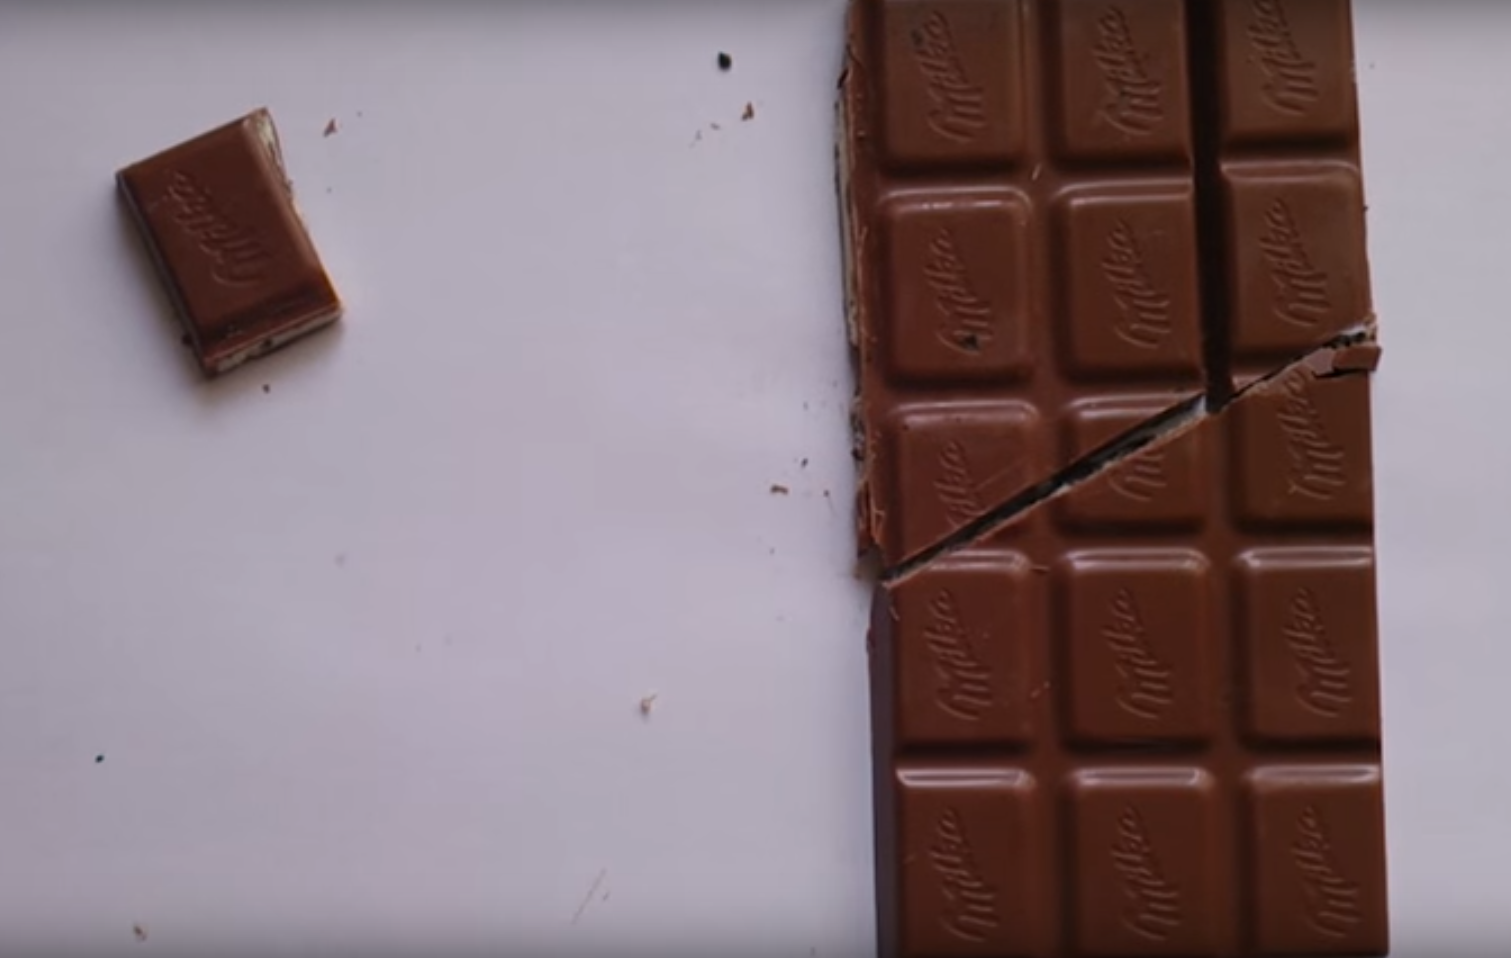 Le mystère du carré de chocolat en plus a fait tourner la tête de bon nombre d'internautes.